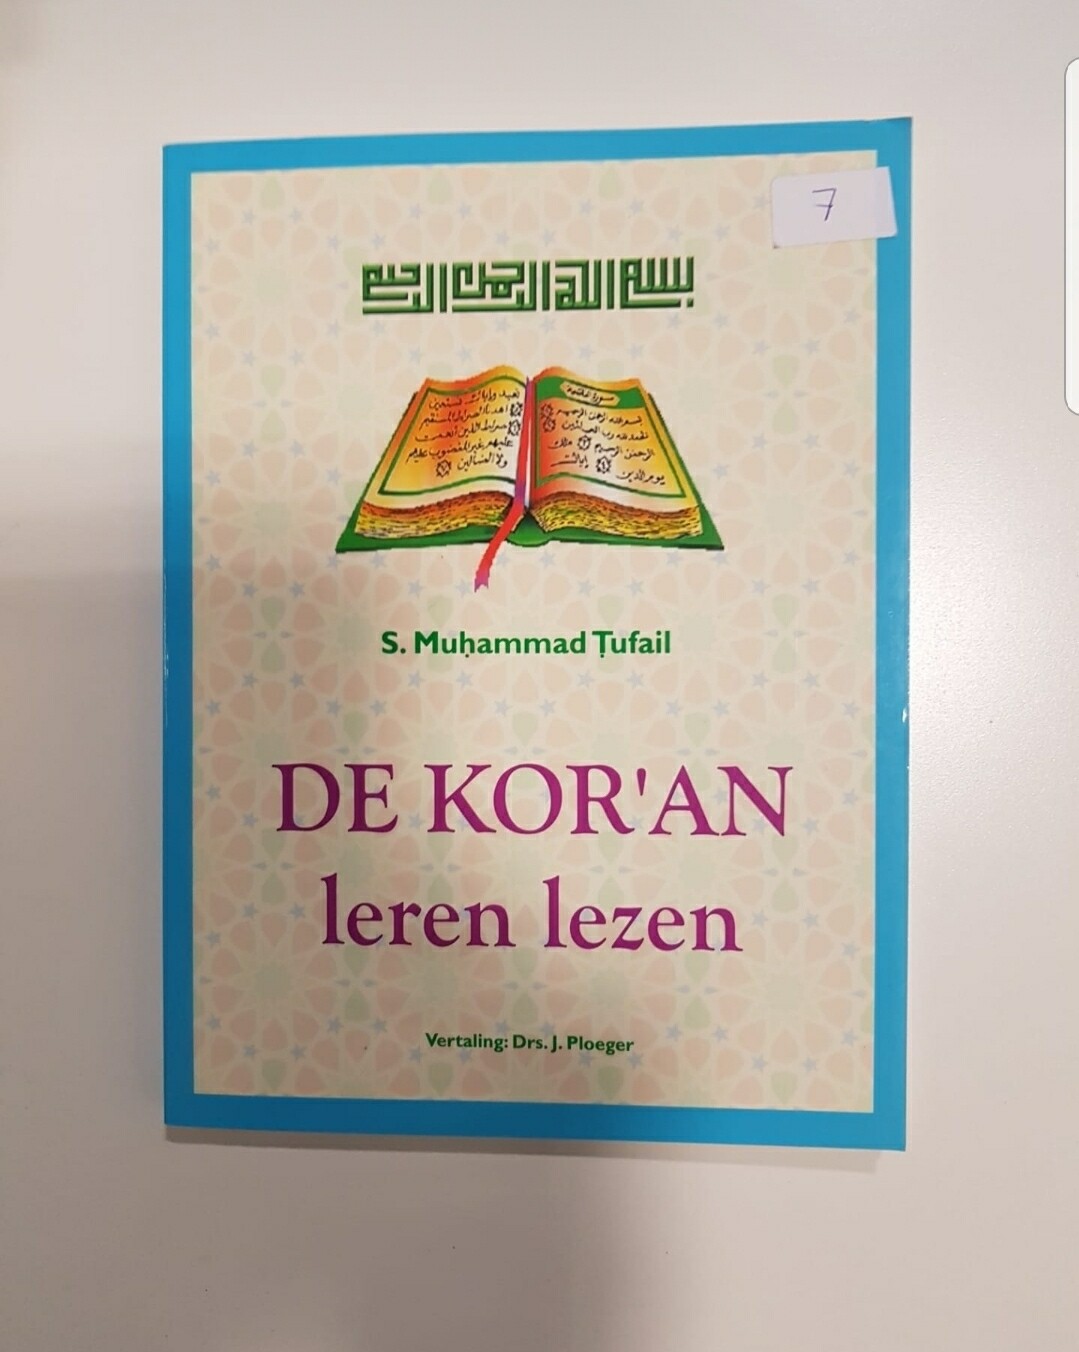 De koran leren lezen